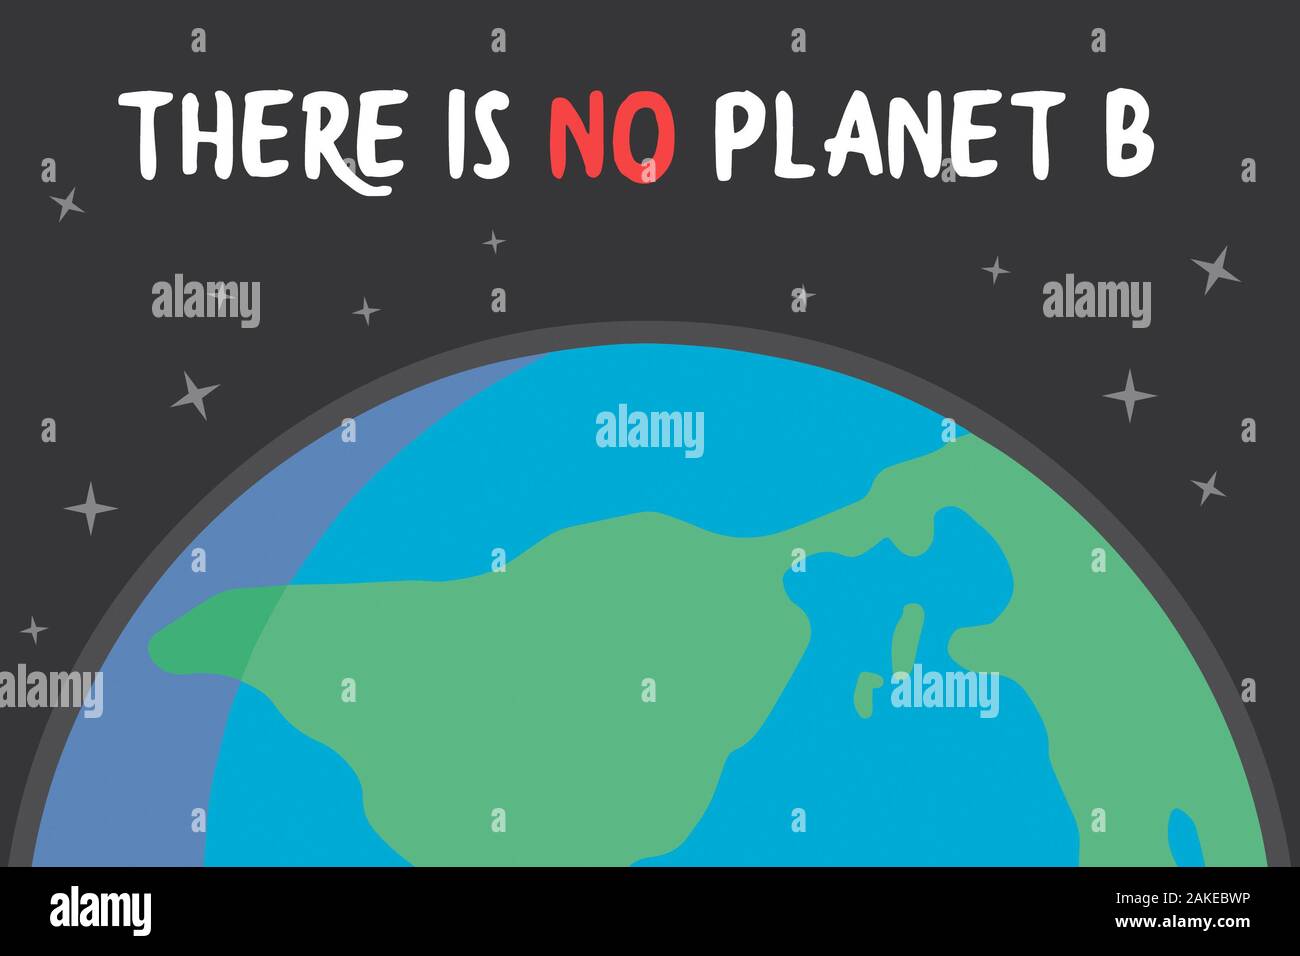 Klimawandel themed Design mit dem Planeten Erde Zeichnung auf schwarzem Hintergrund mit Text: "Es gibt keinen Planet B" Stockfoto